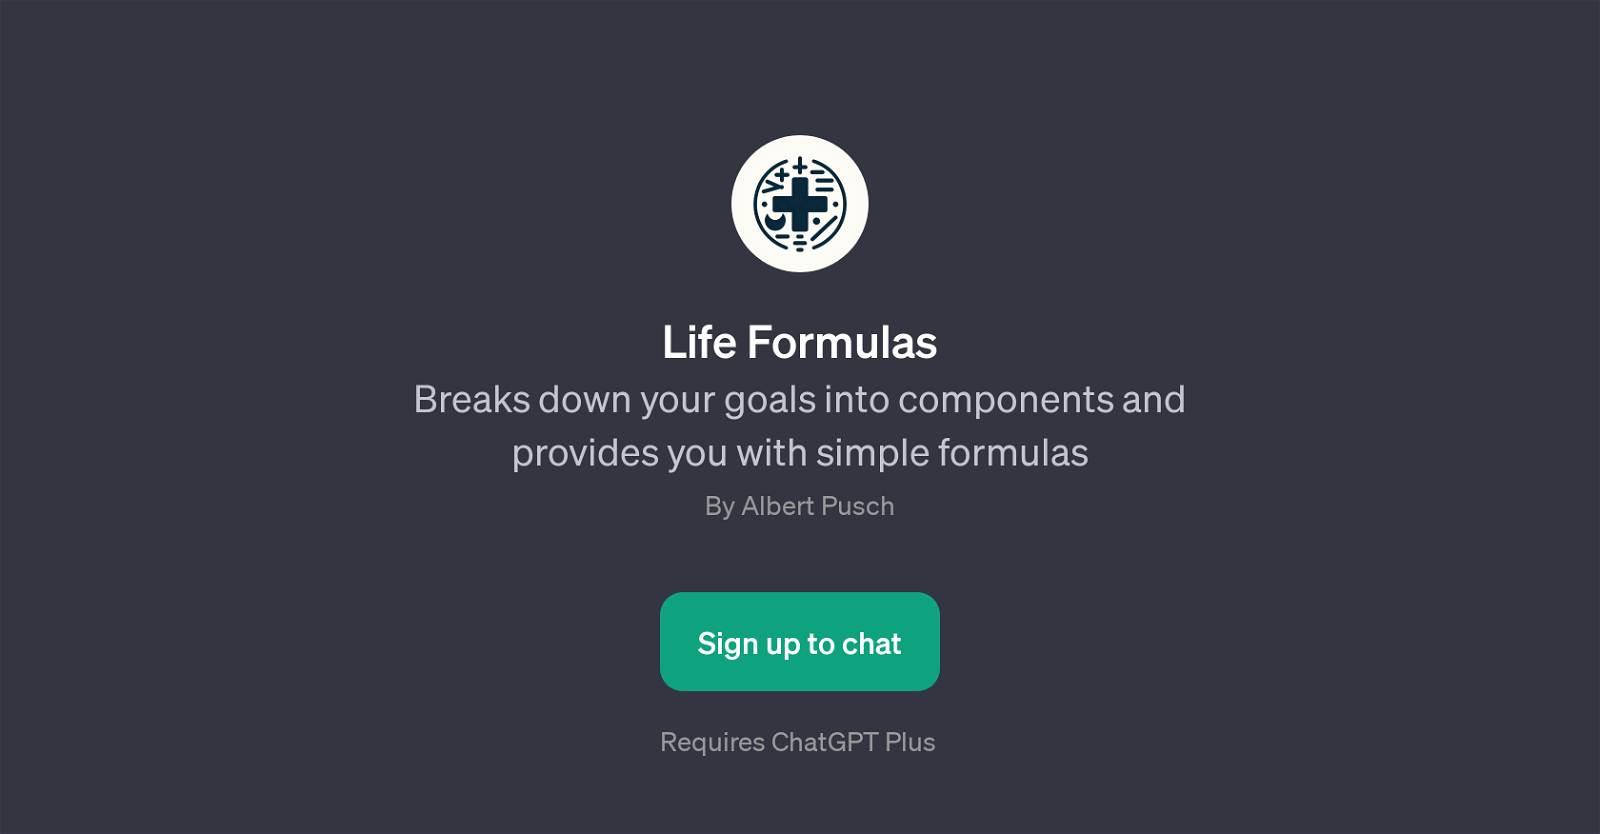 Life Formulas website